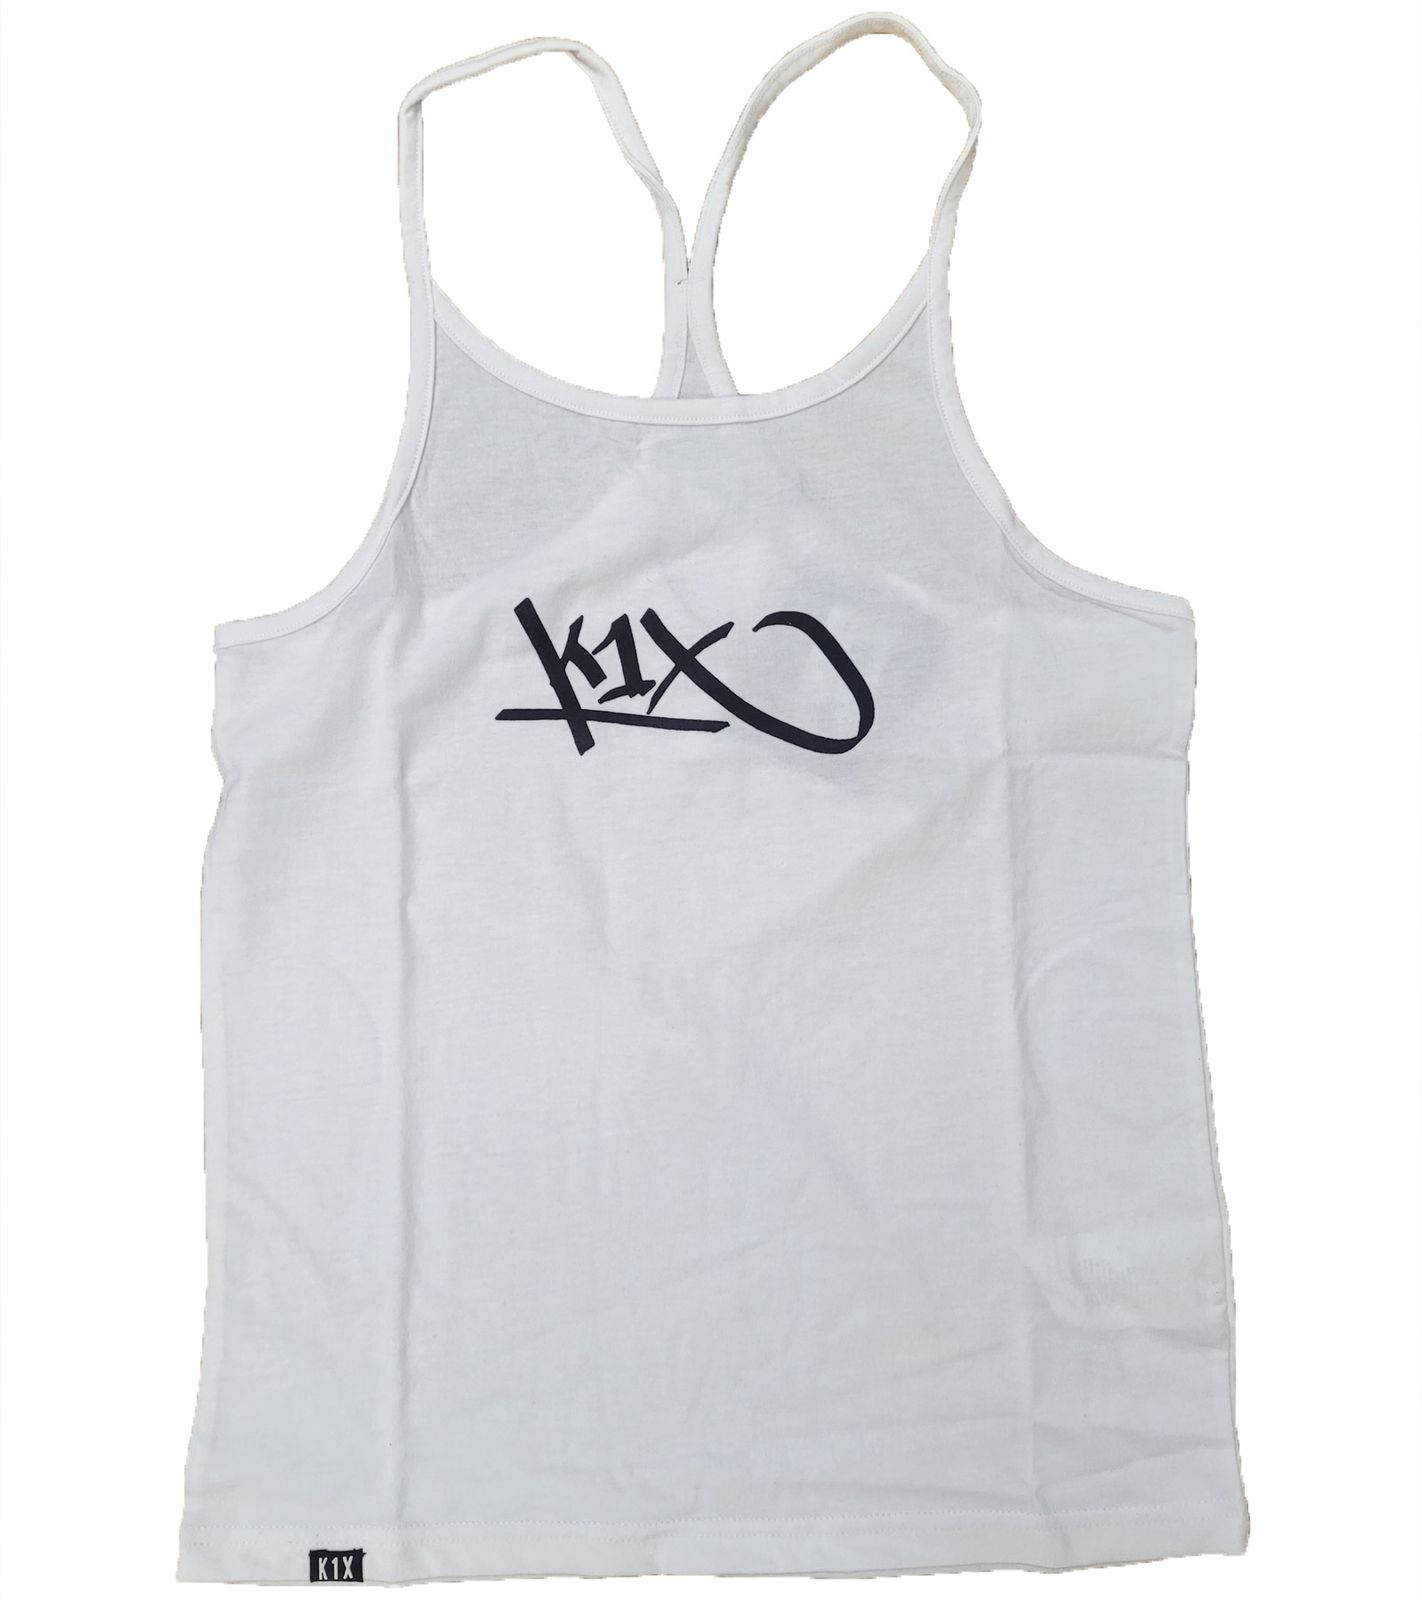 PARK AUTHORITY by K1X | Kickz Tank Top Damen Sommer-Shirt 6200-0137/1000 Weiß/Schwarz von K1X | KICKZ